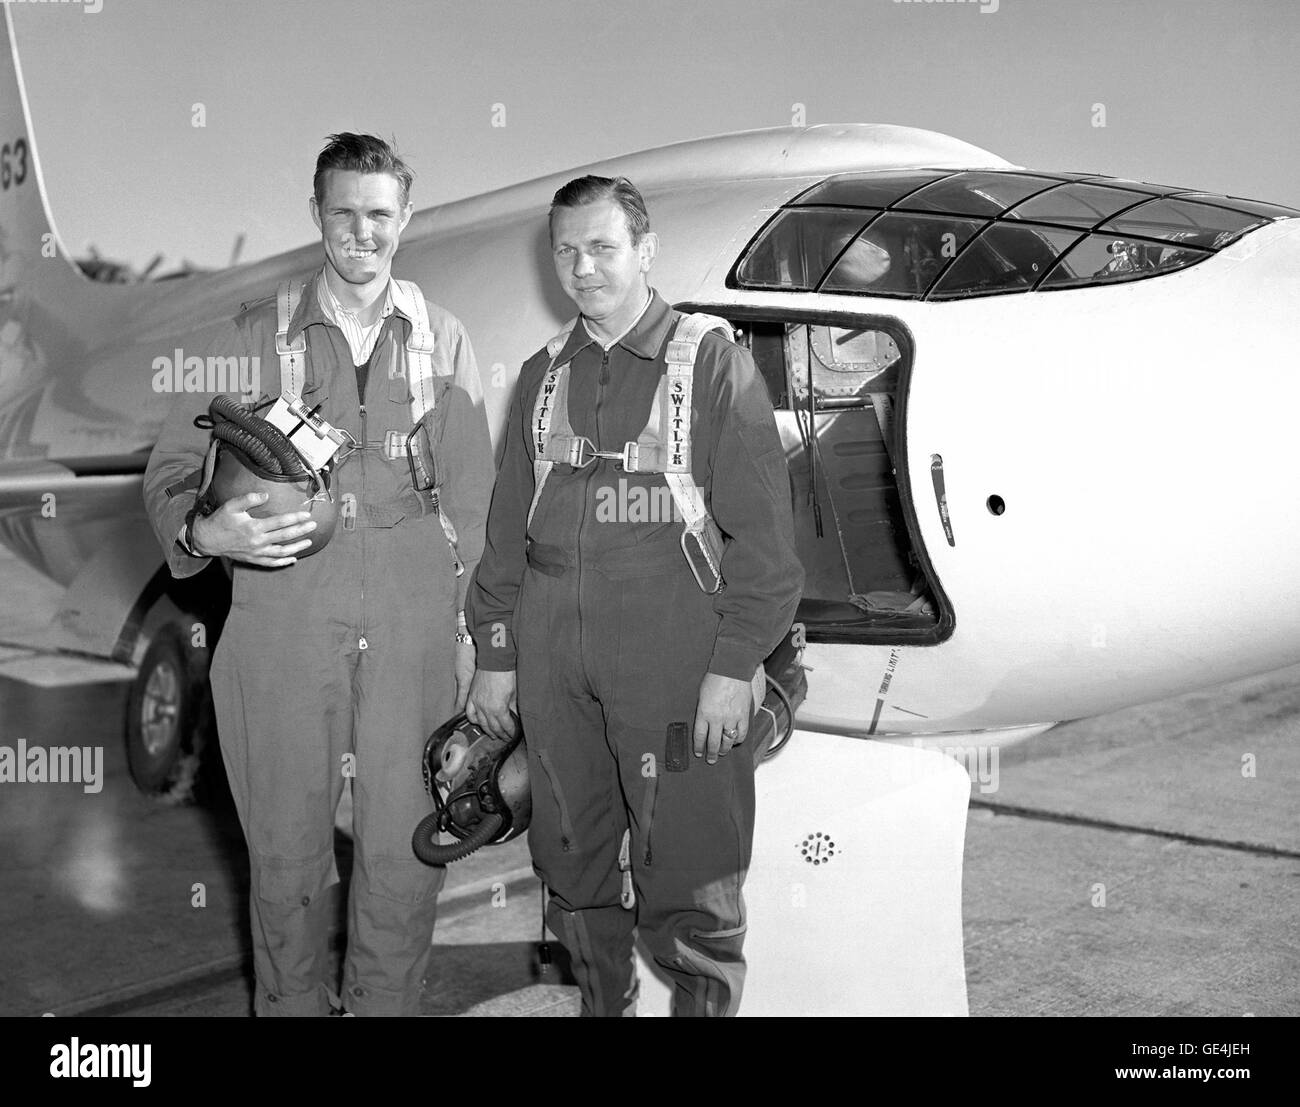 (1 settembre 1949) La Bell Aircraft Corporation X-1-2 e due della NACA i piloti che hanno volato il velivolo. Quello di sinistra è Robert Champine con gli altri essendo Herbert Hoover. La X-1-2 è stata dotata anche del dieci per cento-ala e 8 percento di coda, alimentato con una presa XLR-11 motore a razzo e aeromobili effettuato il suo primo volo il 9 dicembre 1946 con Chalmers "slick" Goodlin presso i comandi. Come con la X-1-1 X-1-2 ha continuato a indagare transonico/volo supersonico regime. NACA pilota di Herbert Hoover divenne il primo civile a volare Mach 1, 10 marzo 1948. X-1-2 volato fino al Foto Stock